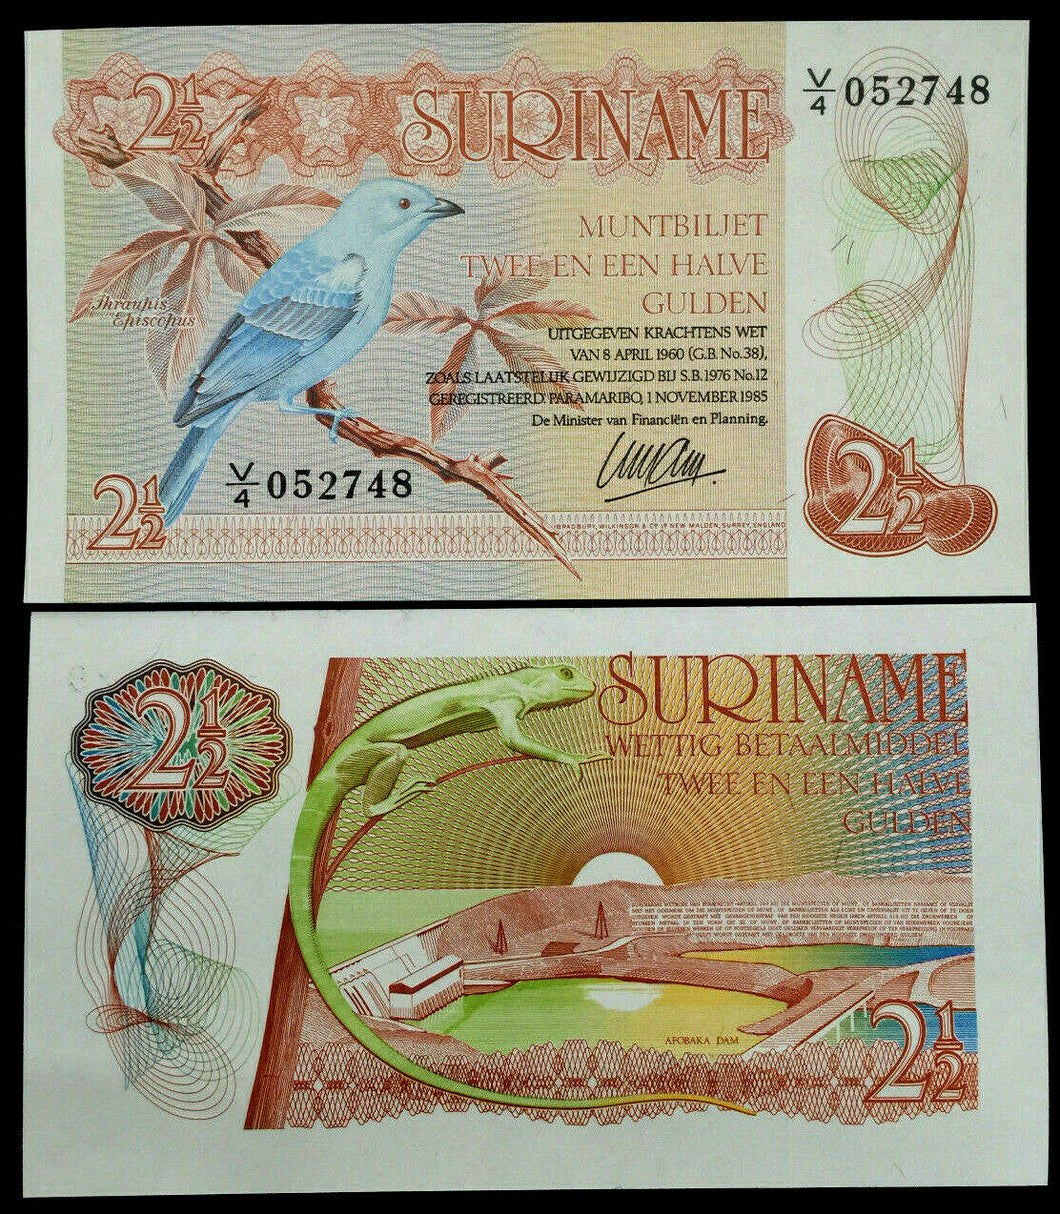 Suriname 2 1/2 Gulden 1985 Banknote World Paper Money UNC Currency Bird Lizard